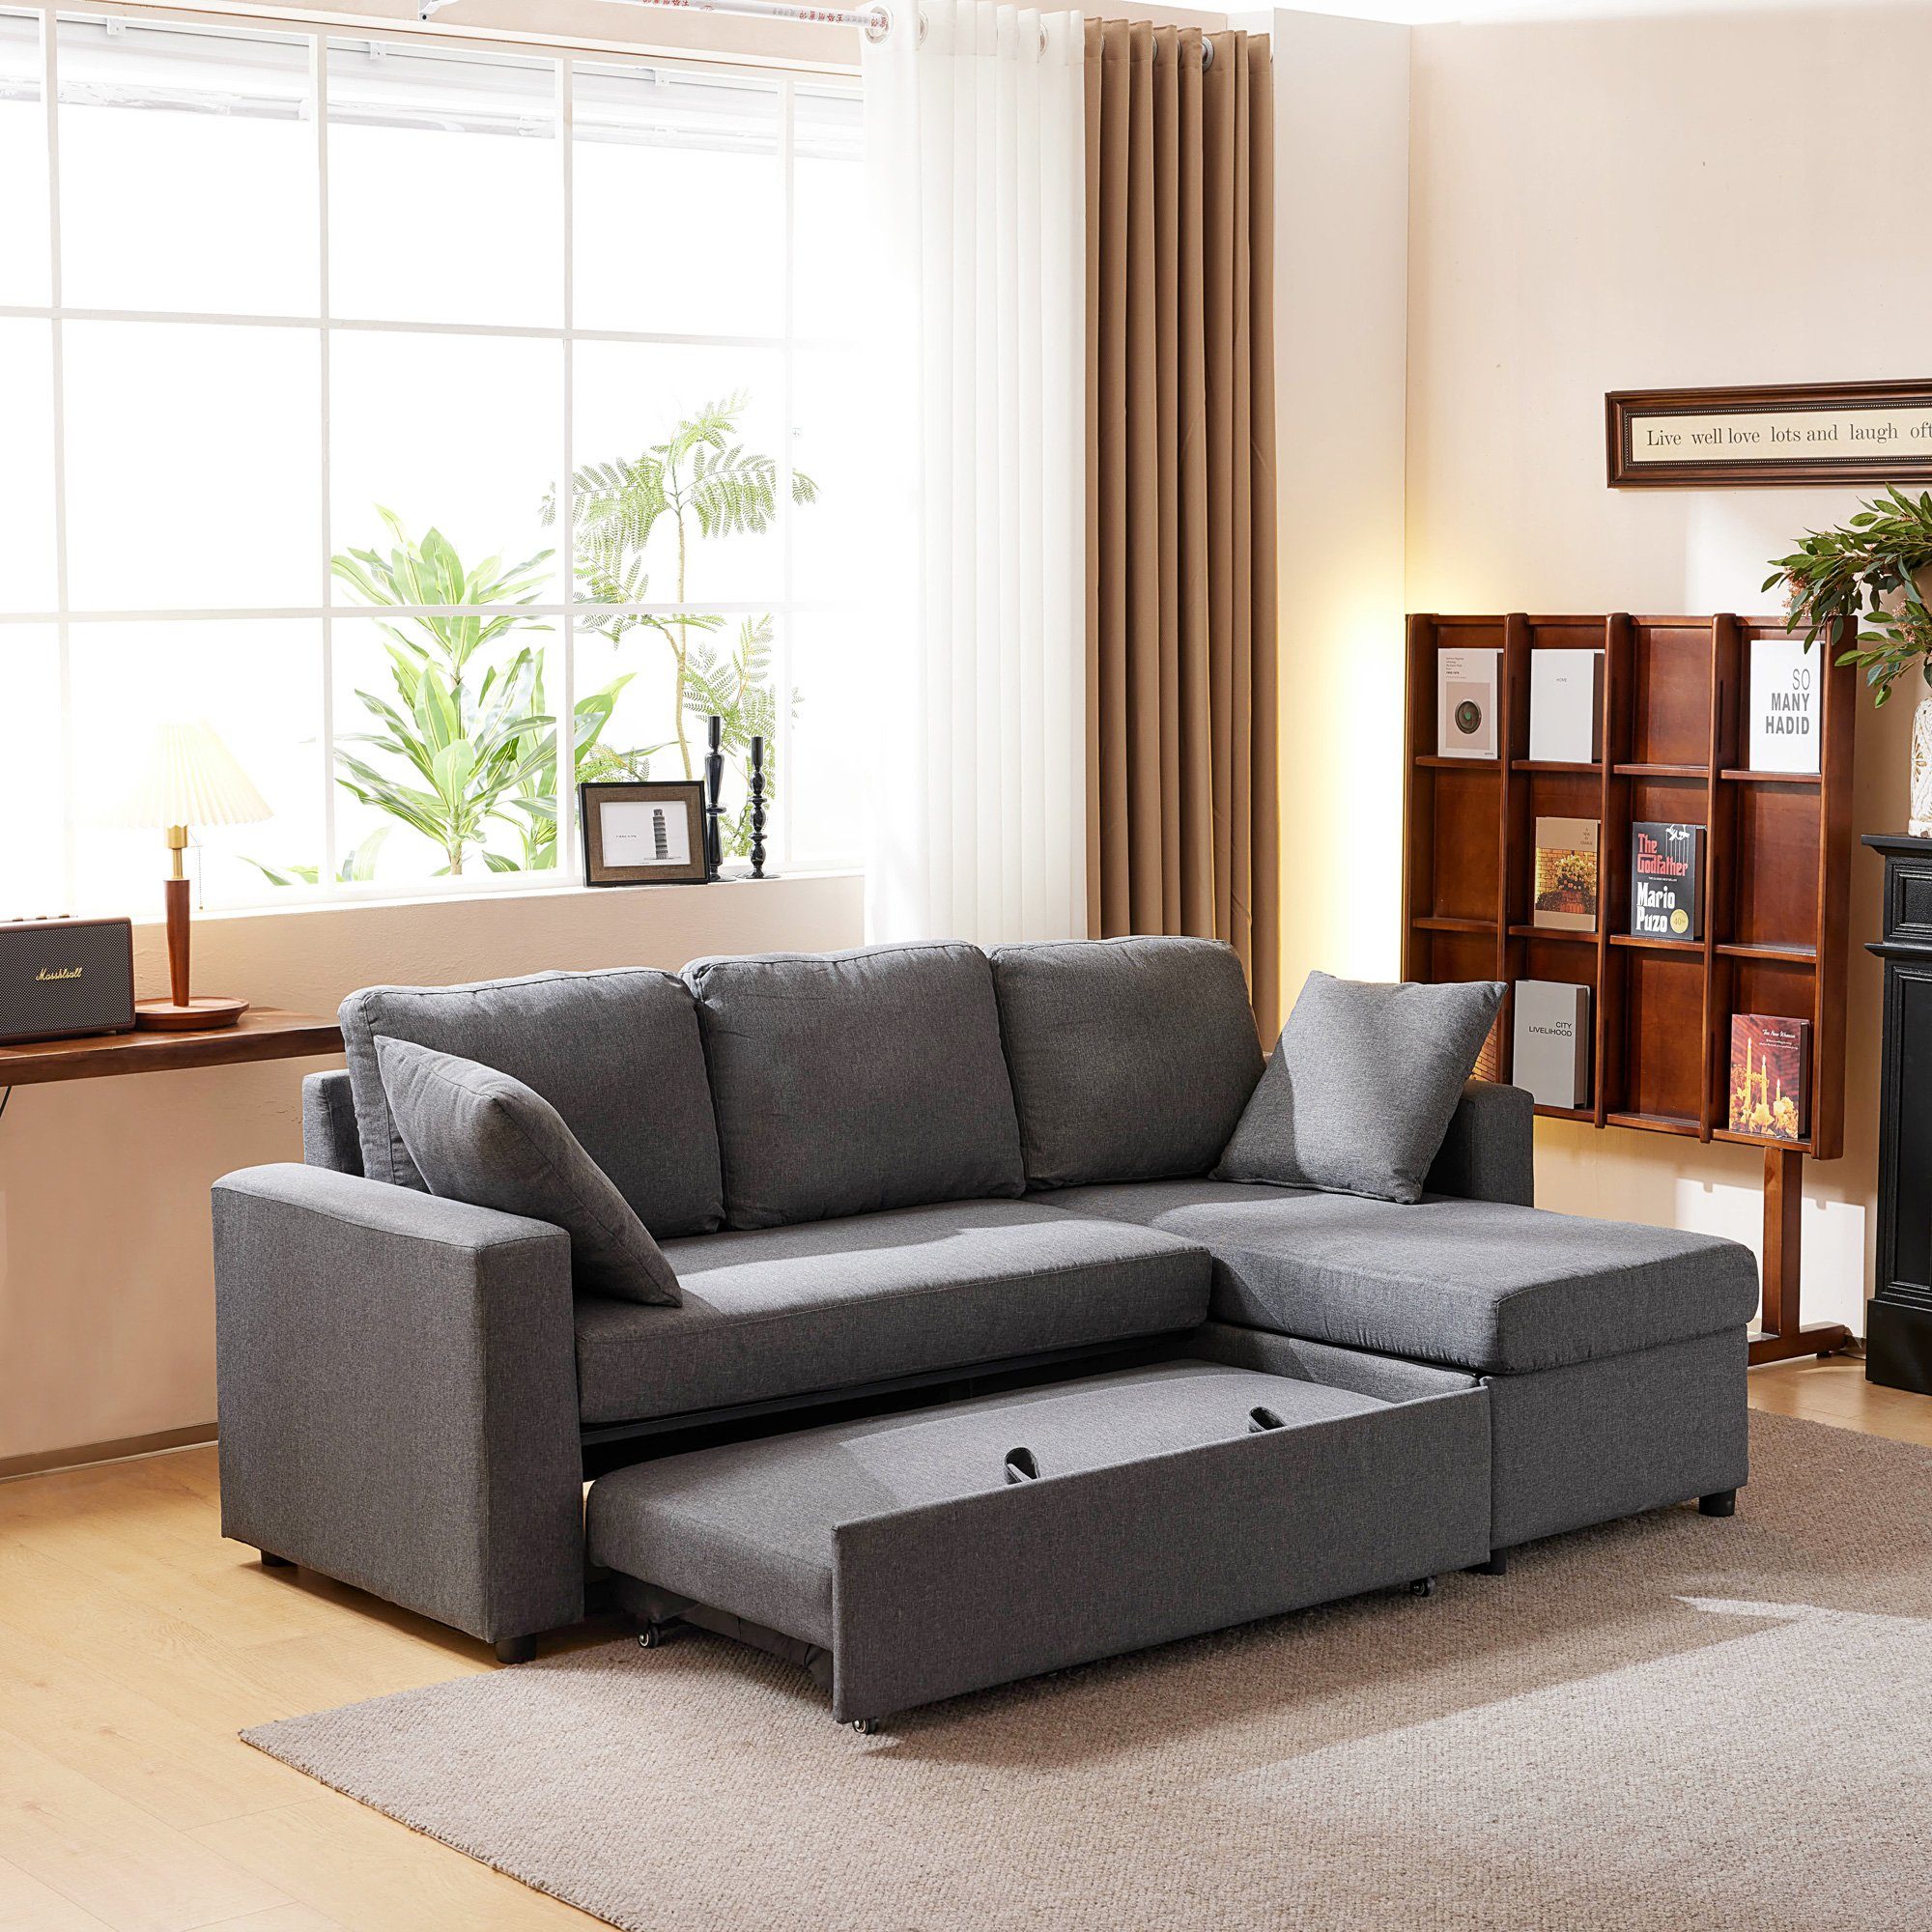 WISHDOR Ecksofa Schlafsofa Sofa mit Schlaffunktion, modernes Design, Polstermöbel, Sofas mit Chaiselongue